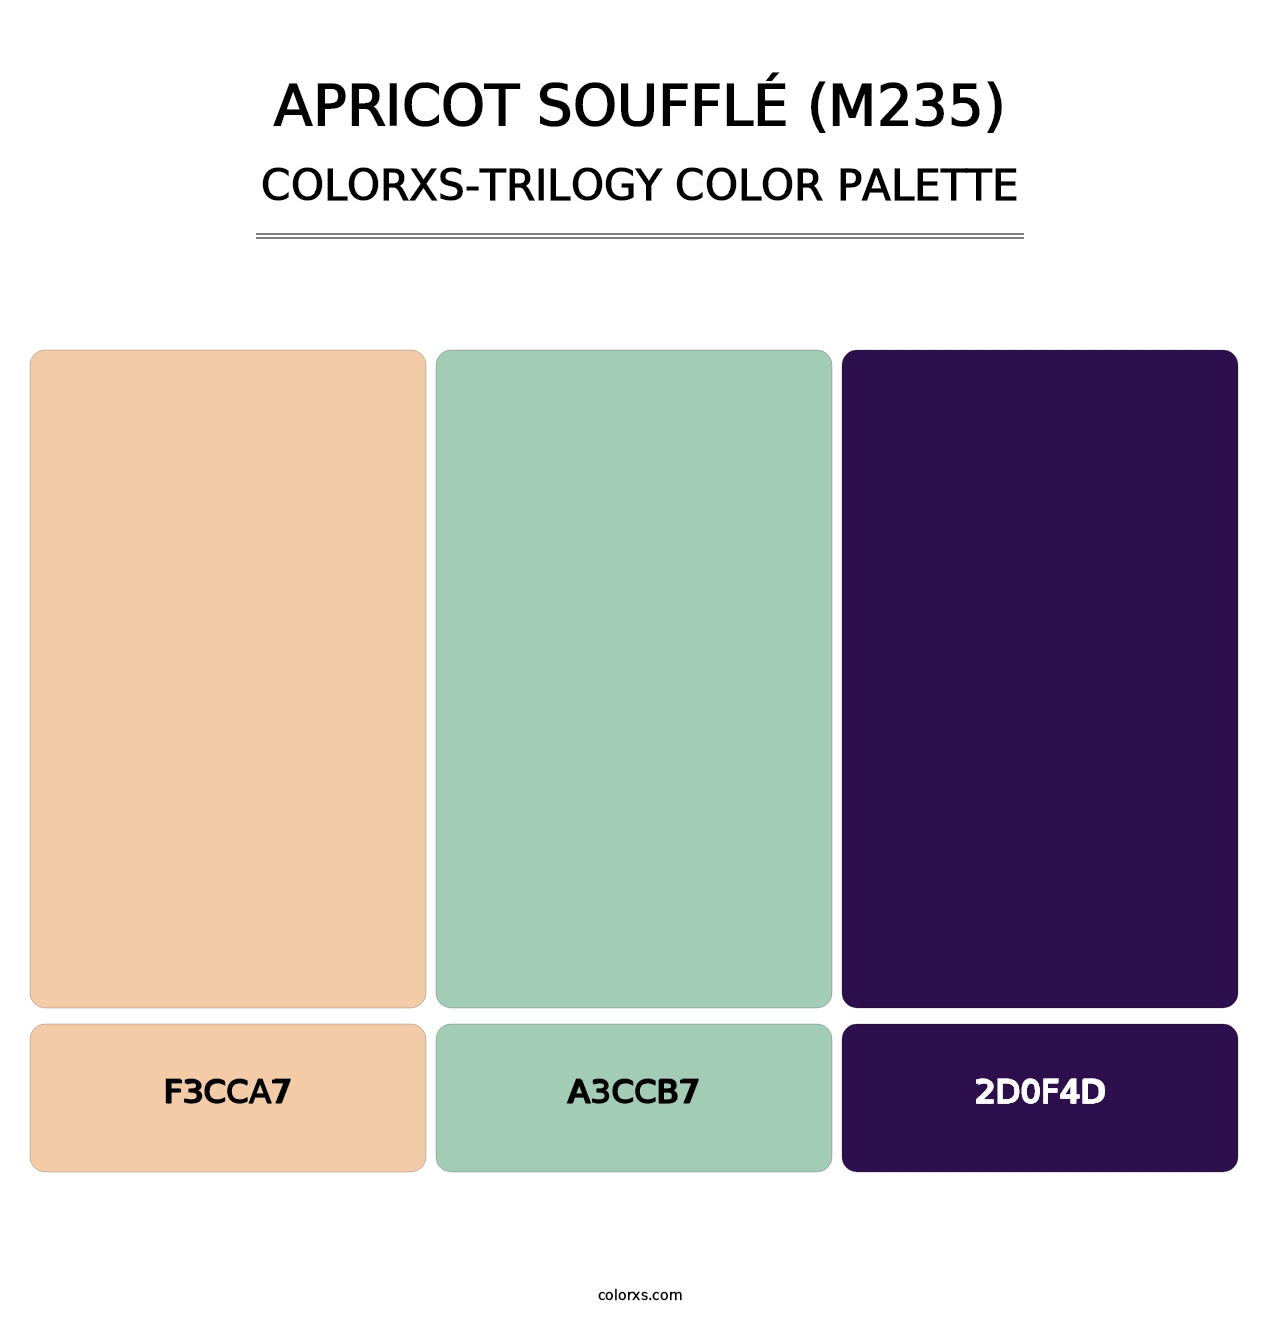 Apricot Soufflé (M235) - Colorxs Trilogy Palette